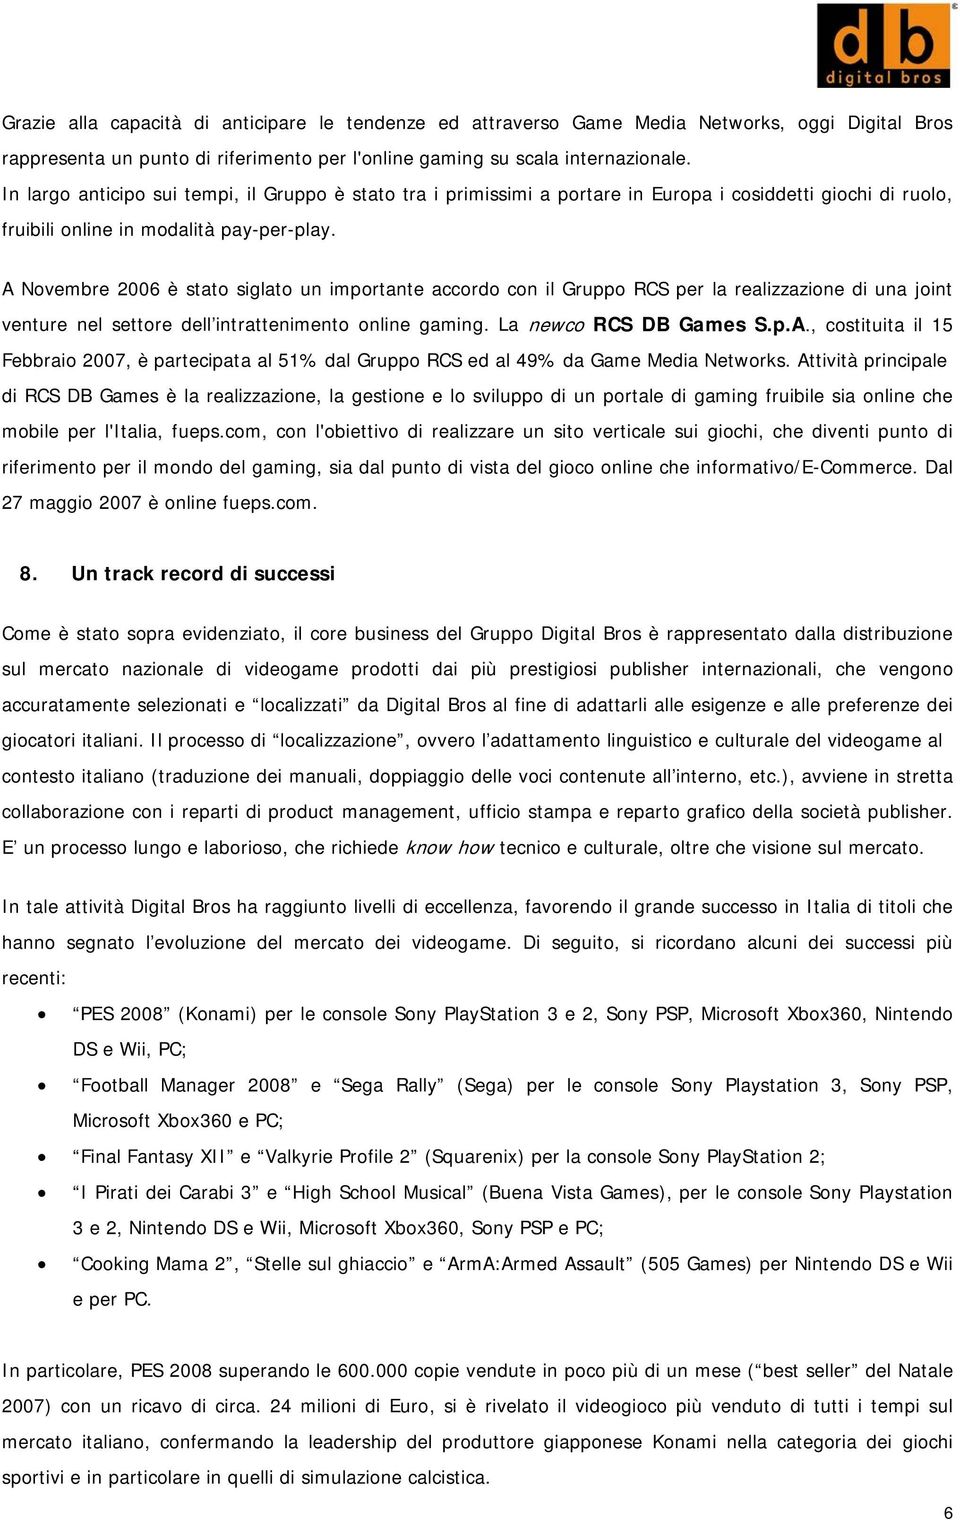 A Novembre 2006 è stato siglato un importante accordo con il Gruppo RCS per la realizzazione di una joint venture nel settore dell intrattenimento online gaming. La newco RCS DB Games S.p.A., costituita il 15 Febbraio 2007, è partecipata al 51% dal Gruppo RCS ed al 49% da Game Media Networks.